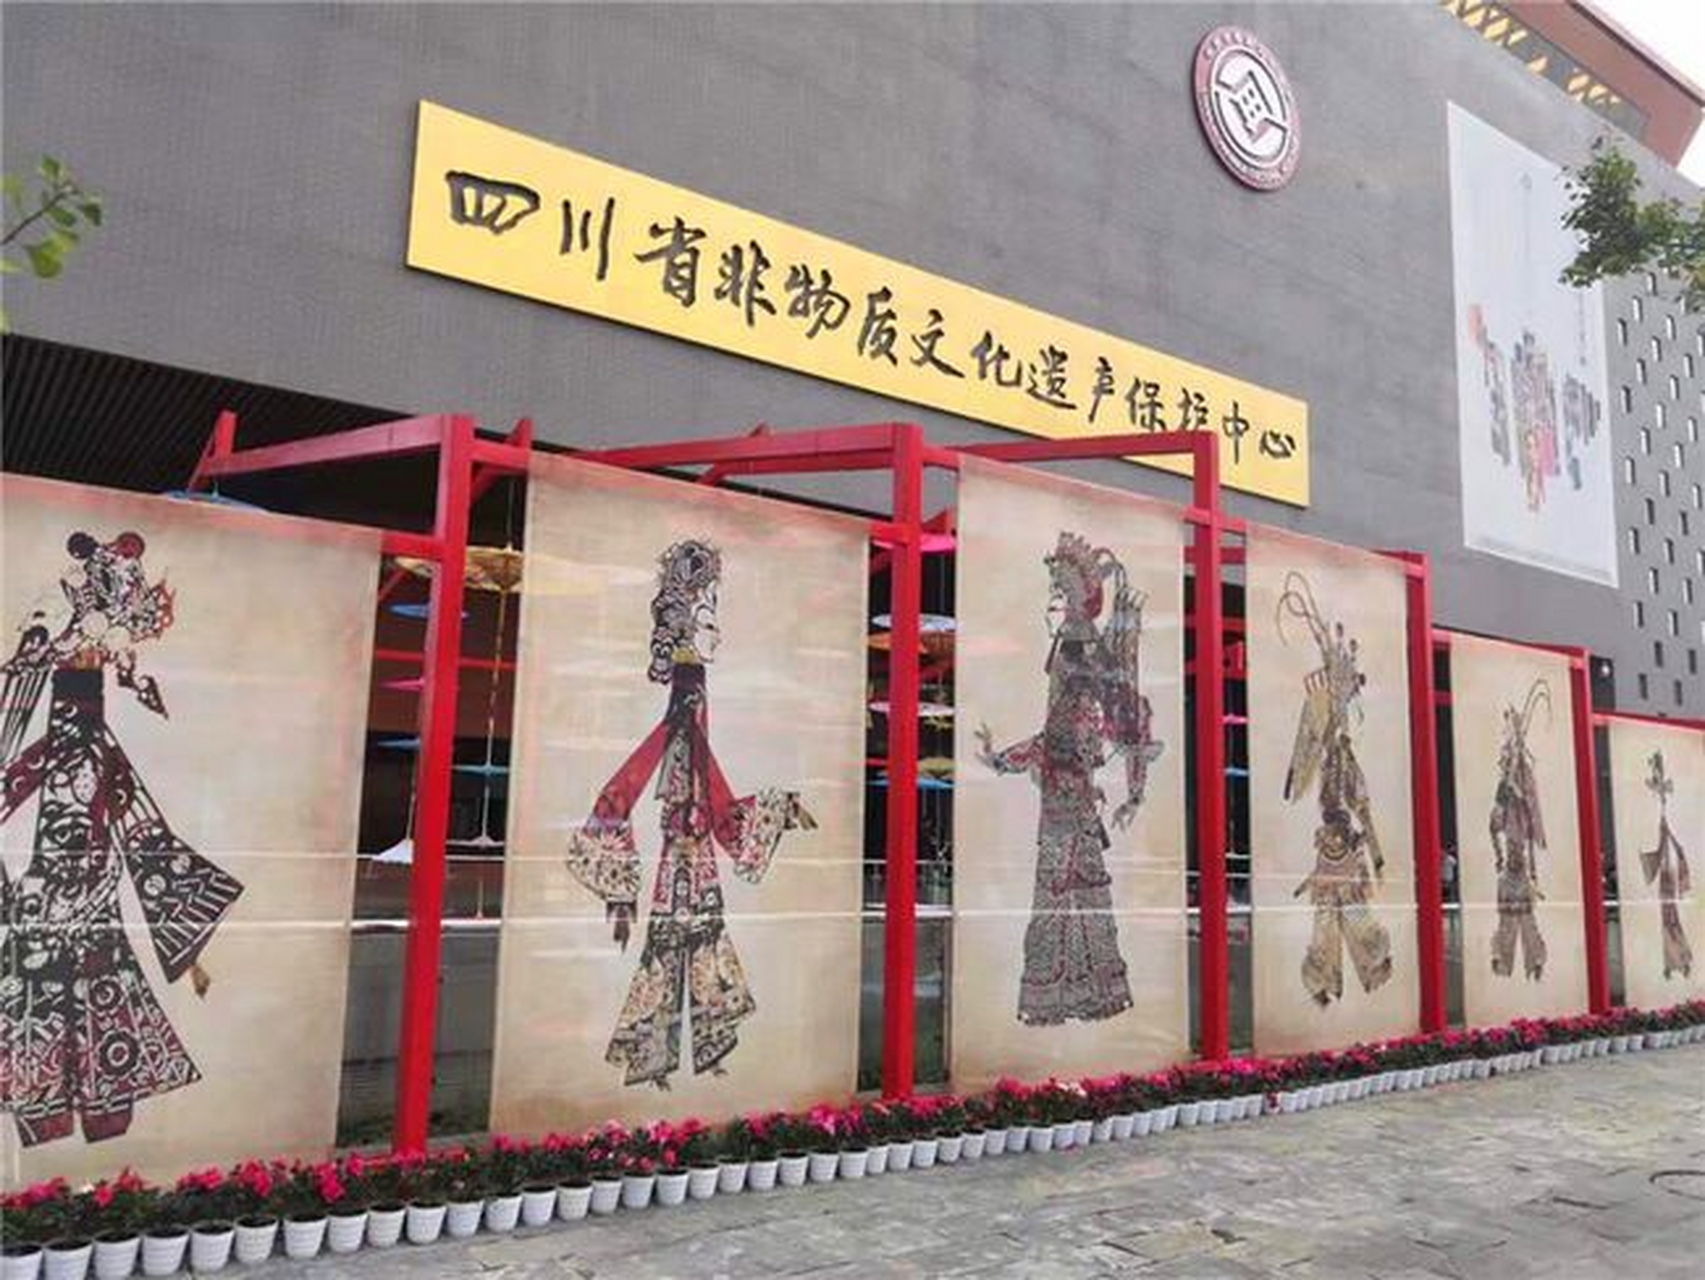 成都国际非物质文化遗产博览园:在这里汇聚了来自世界各地的非遗文化